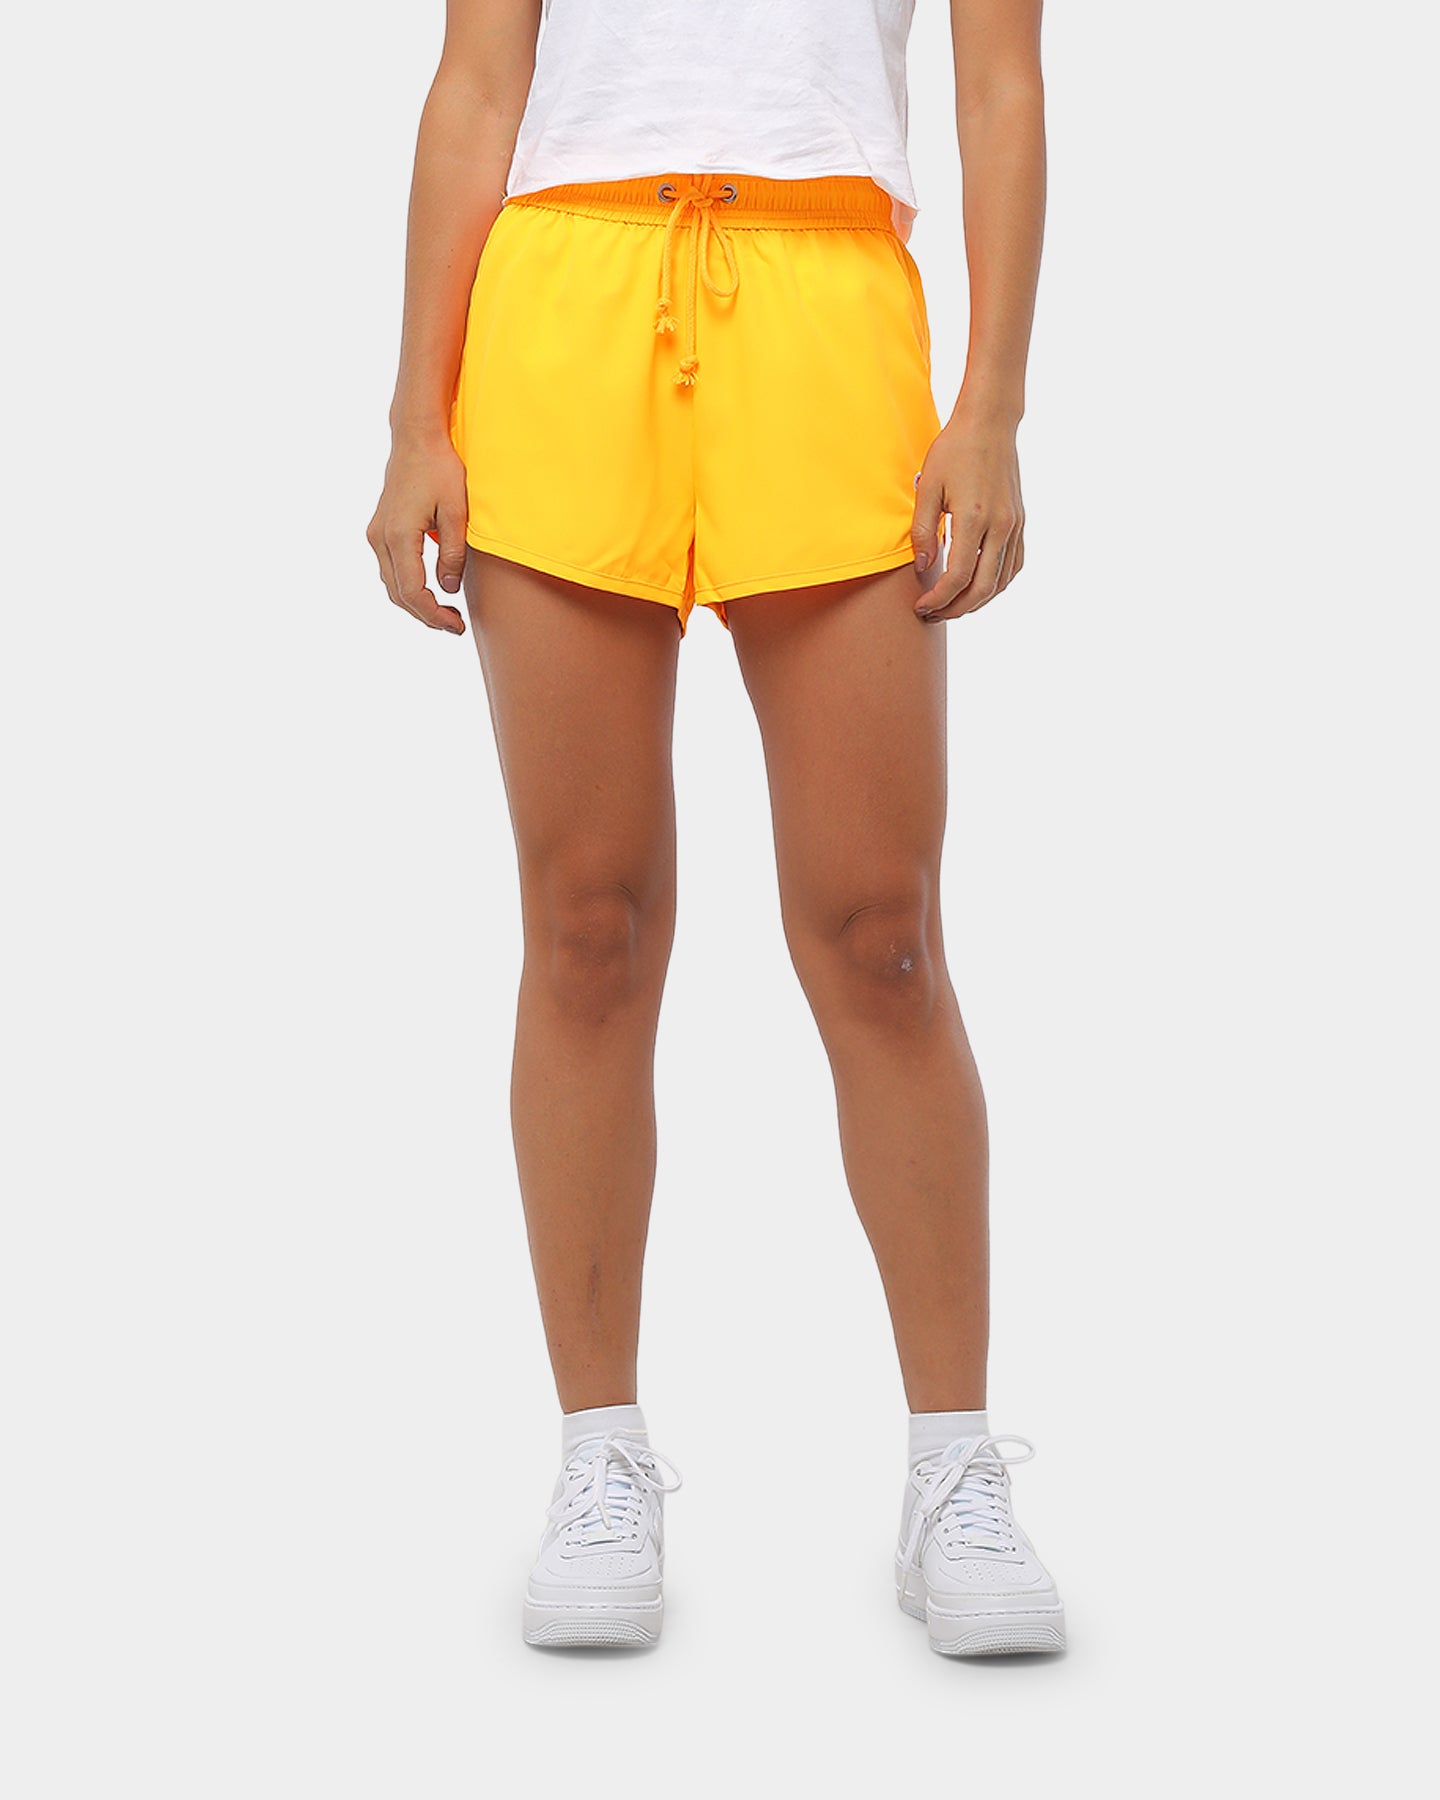 yellow champion shorts womens